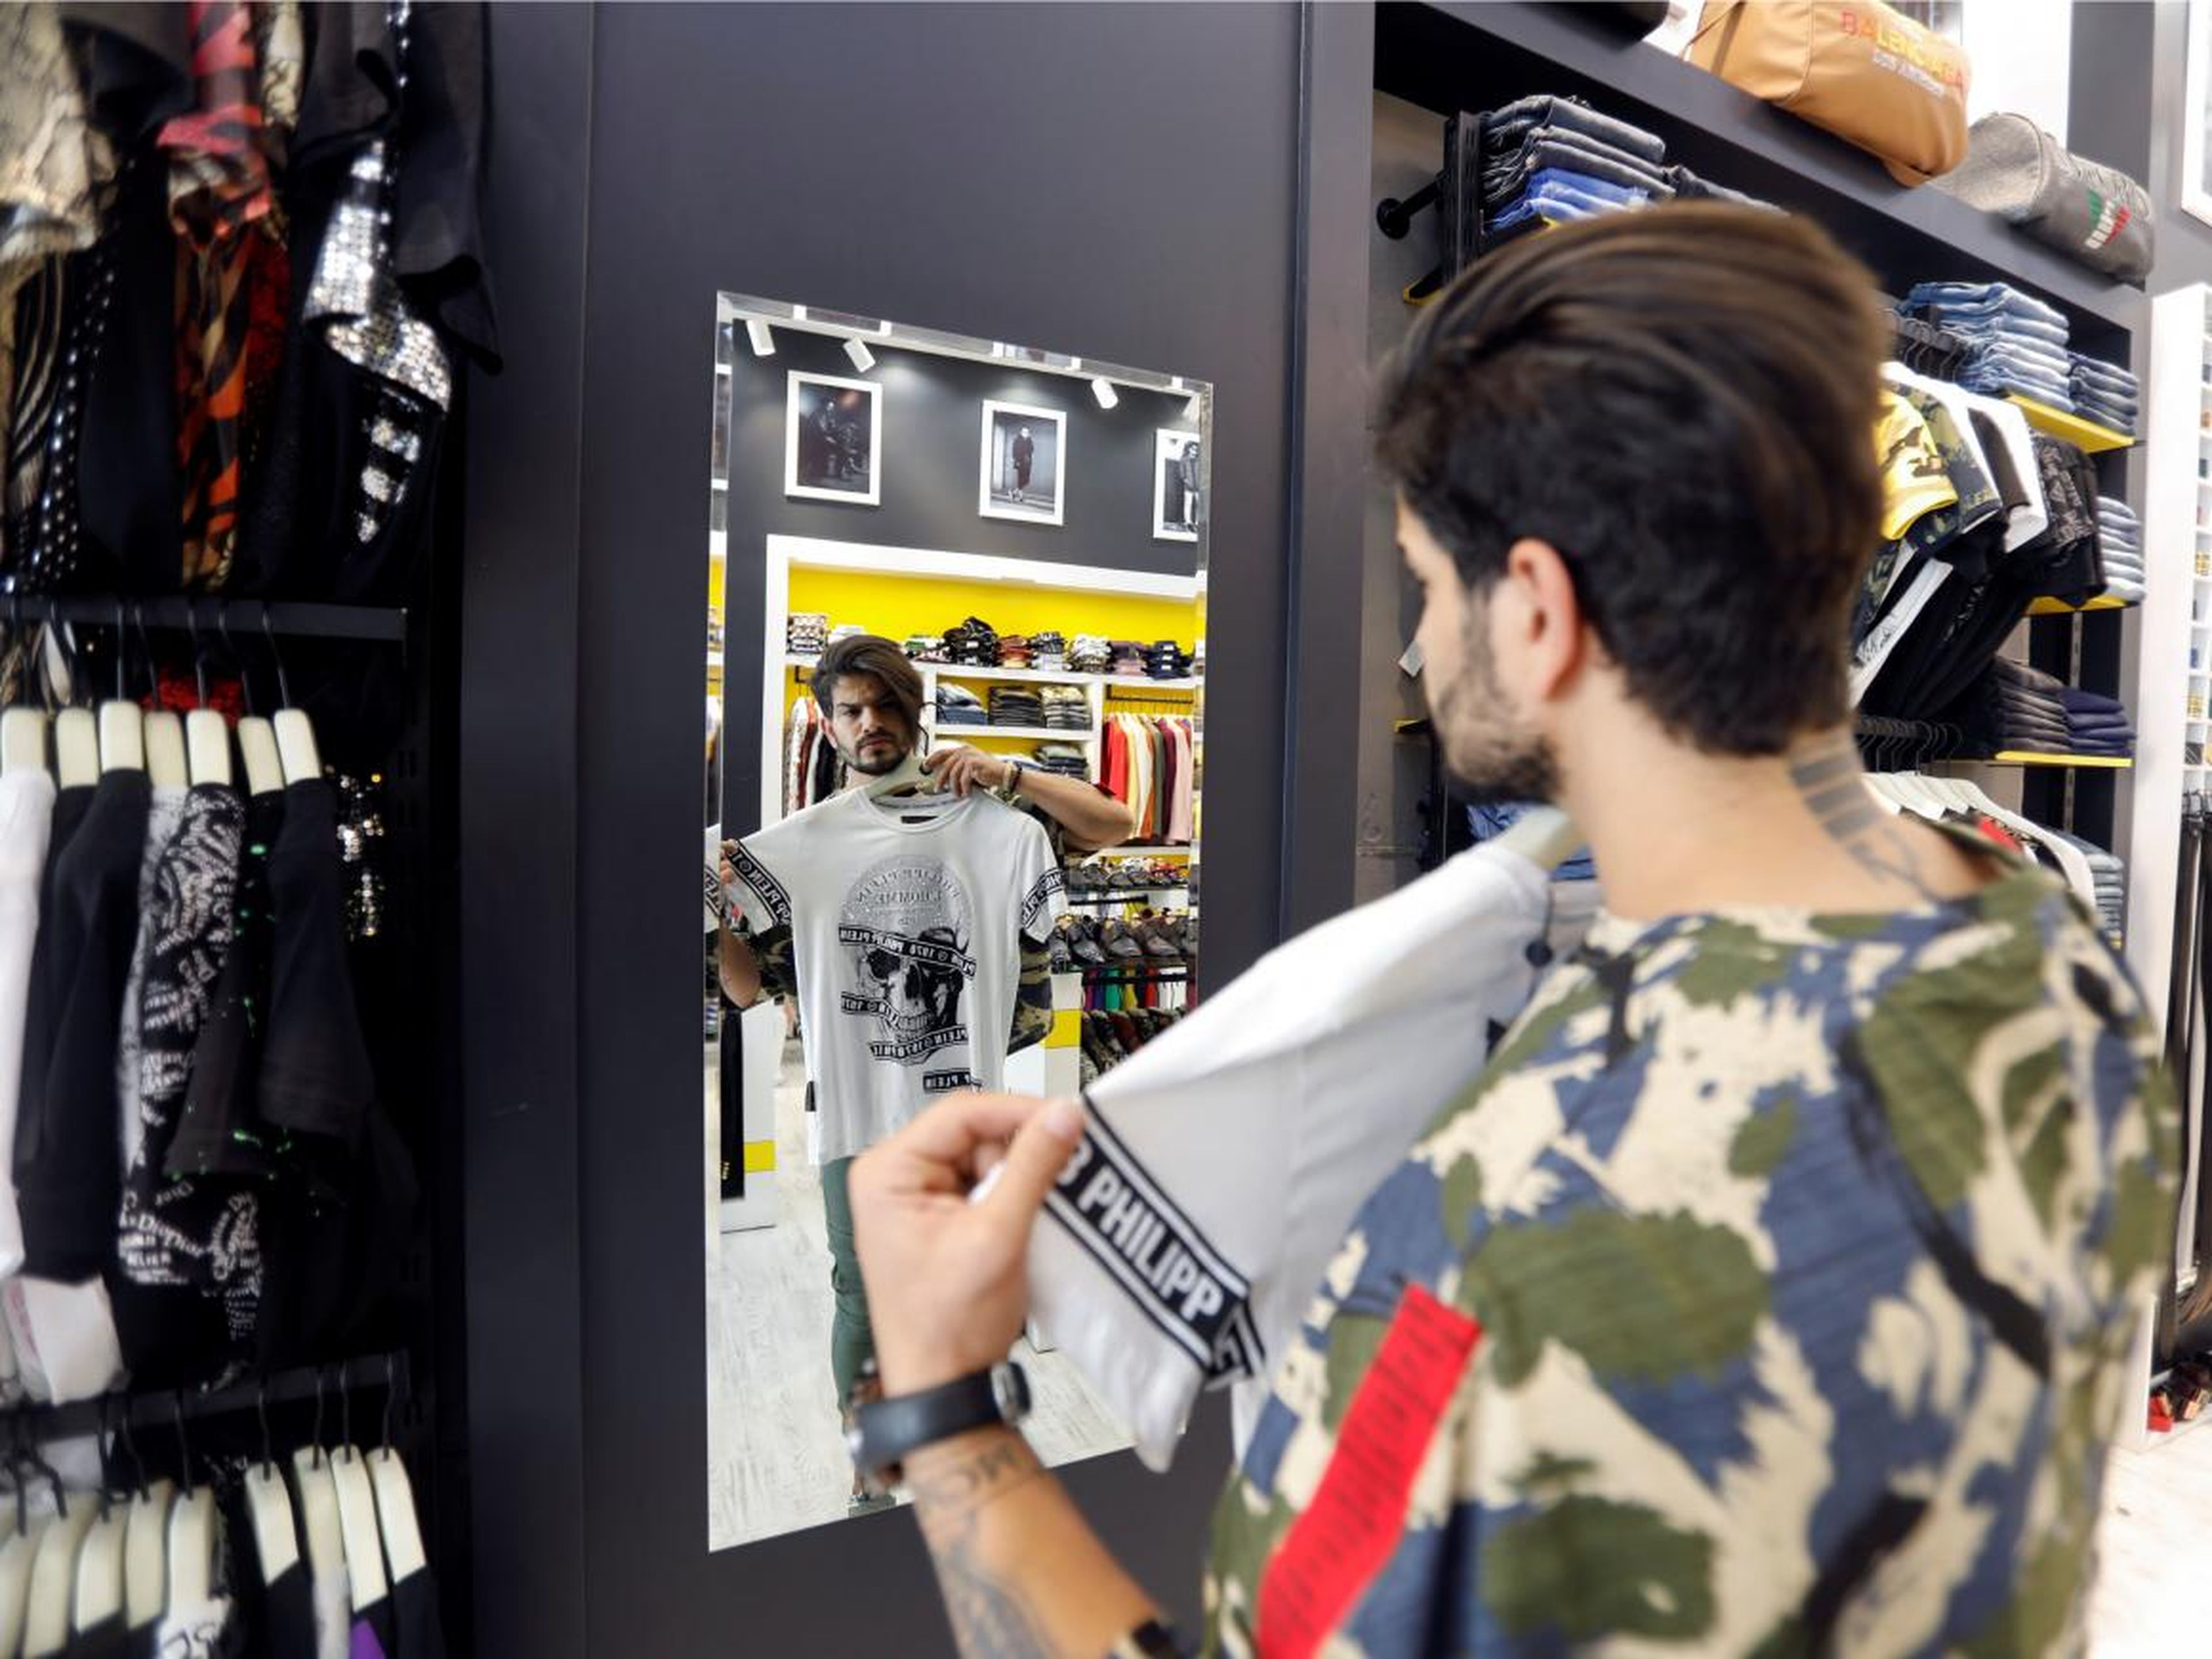 Un hombre iraquí se mira en el espejo mientras compra.